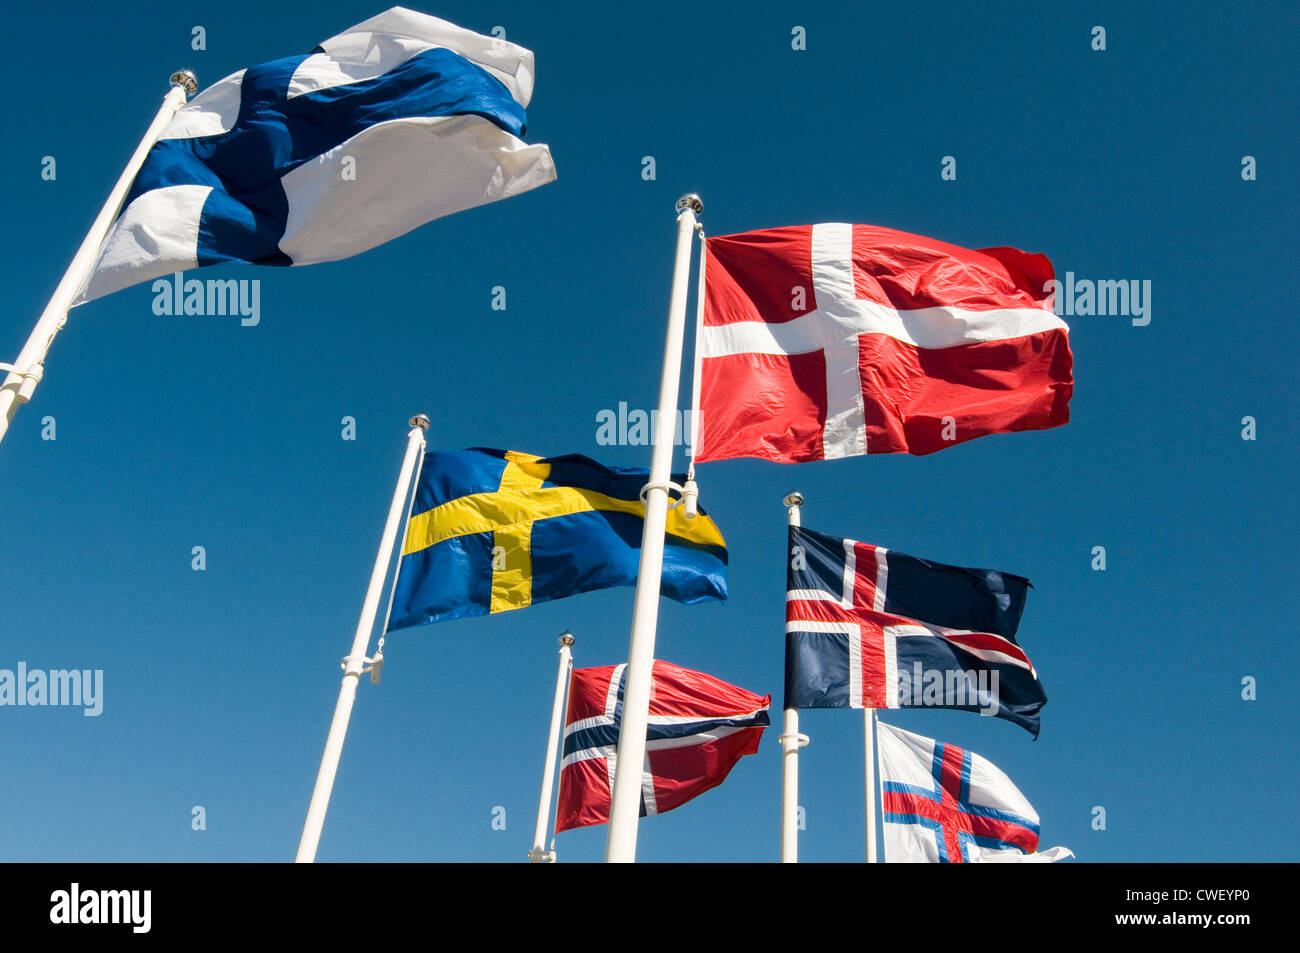 Pays du Conseil nordique des drapeaux drapeau pays voisins scandinaves Scandinavie économie économie's Suède Finlande Danemark Norvège un Banque D'Images